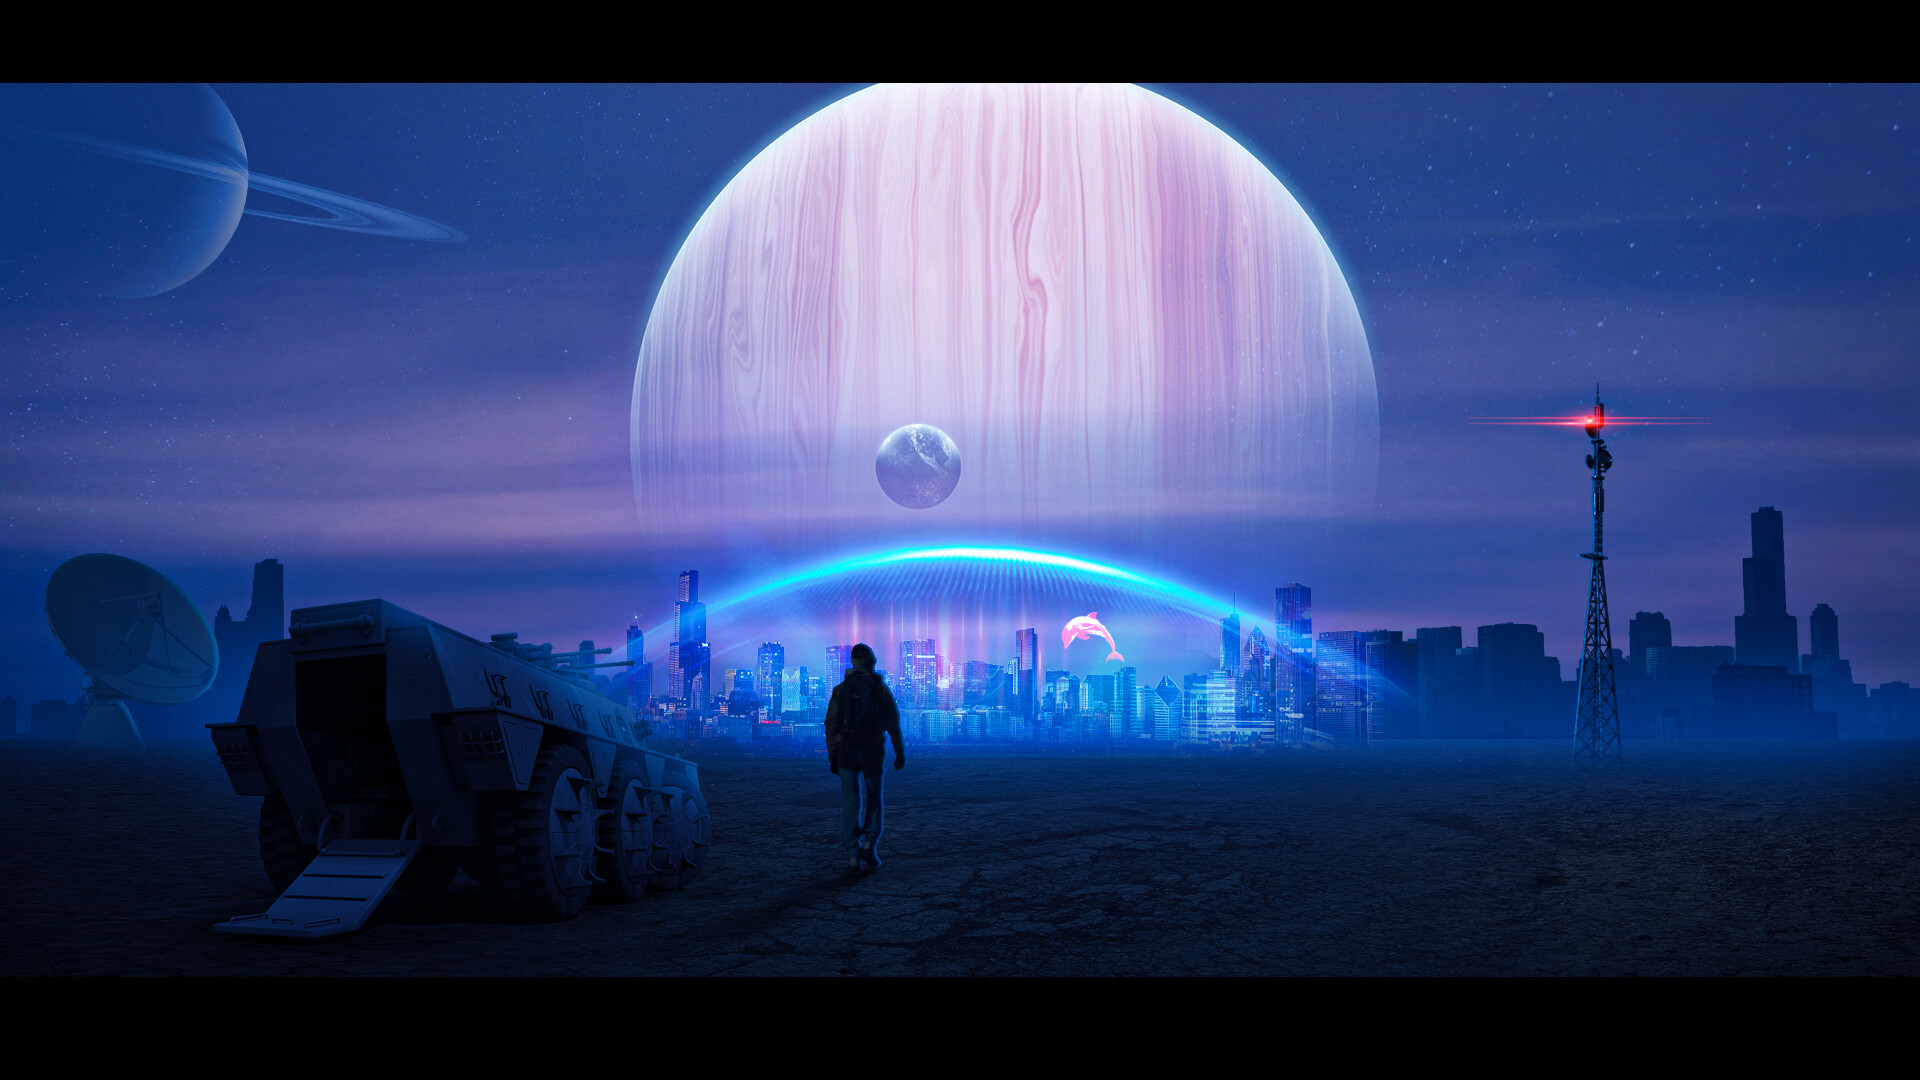 Pavan Kumar - Neon Sci-Fi City